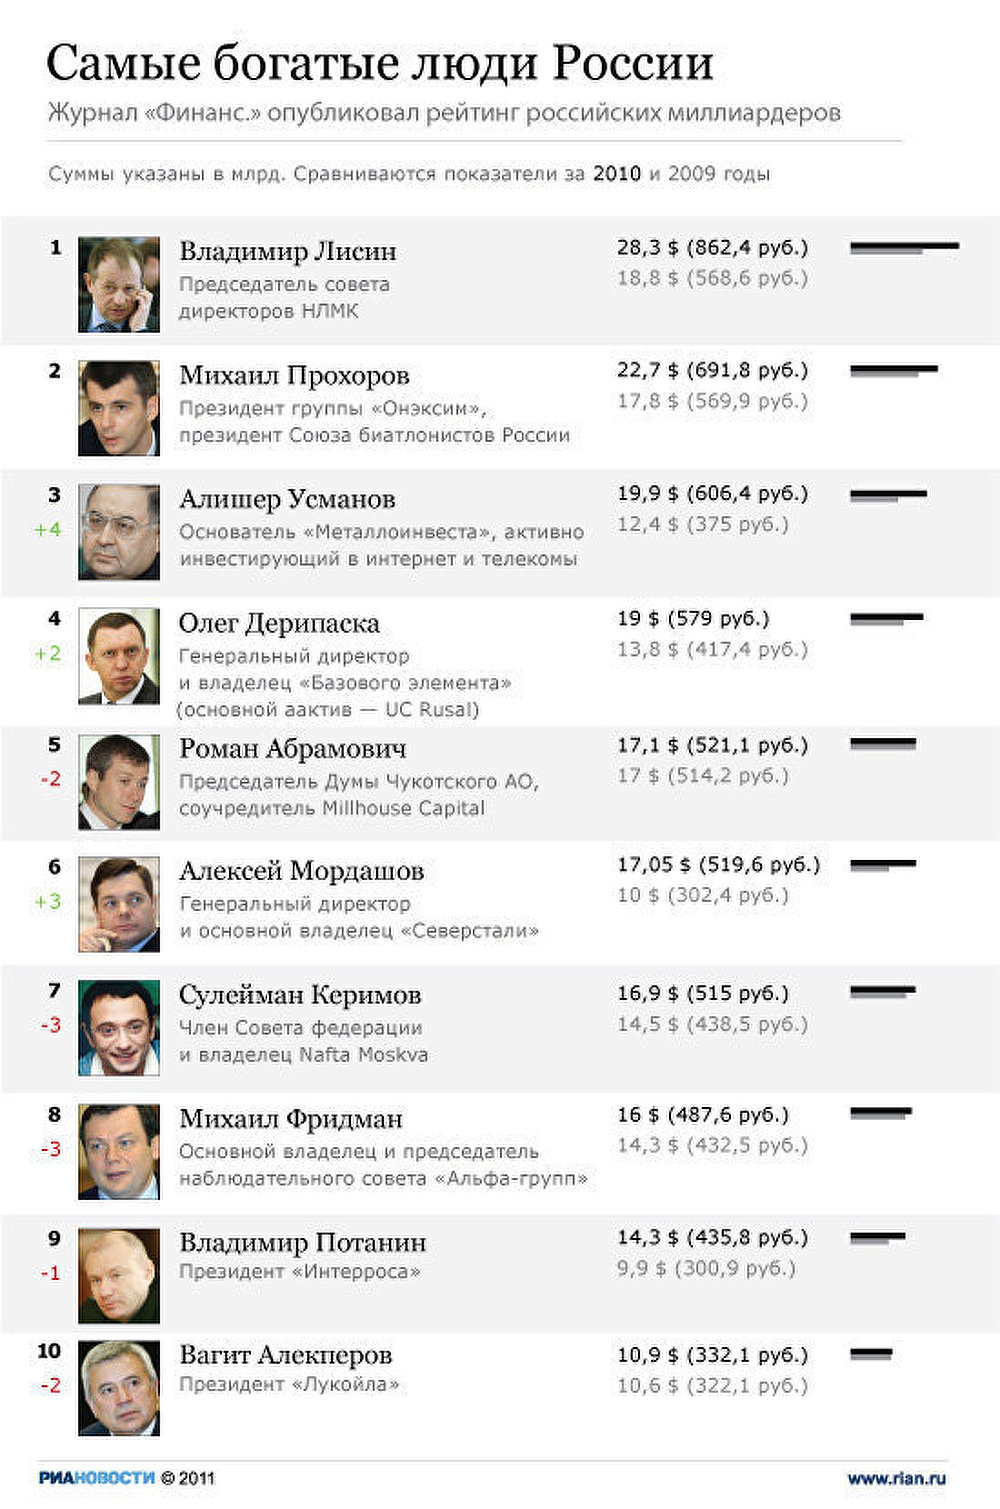 Топ-10 самых богатых россиян по версии Финанс.